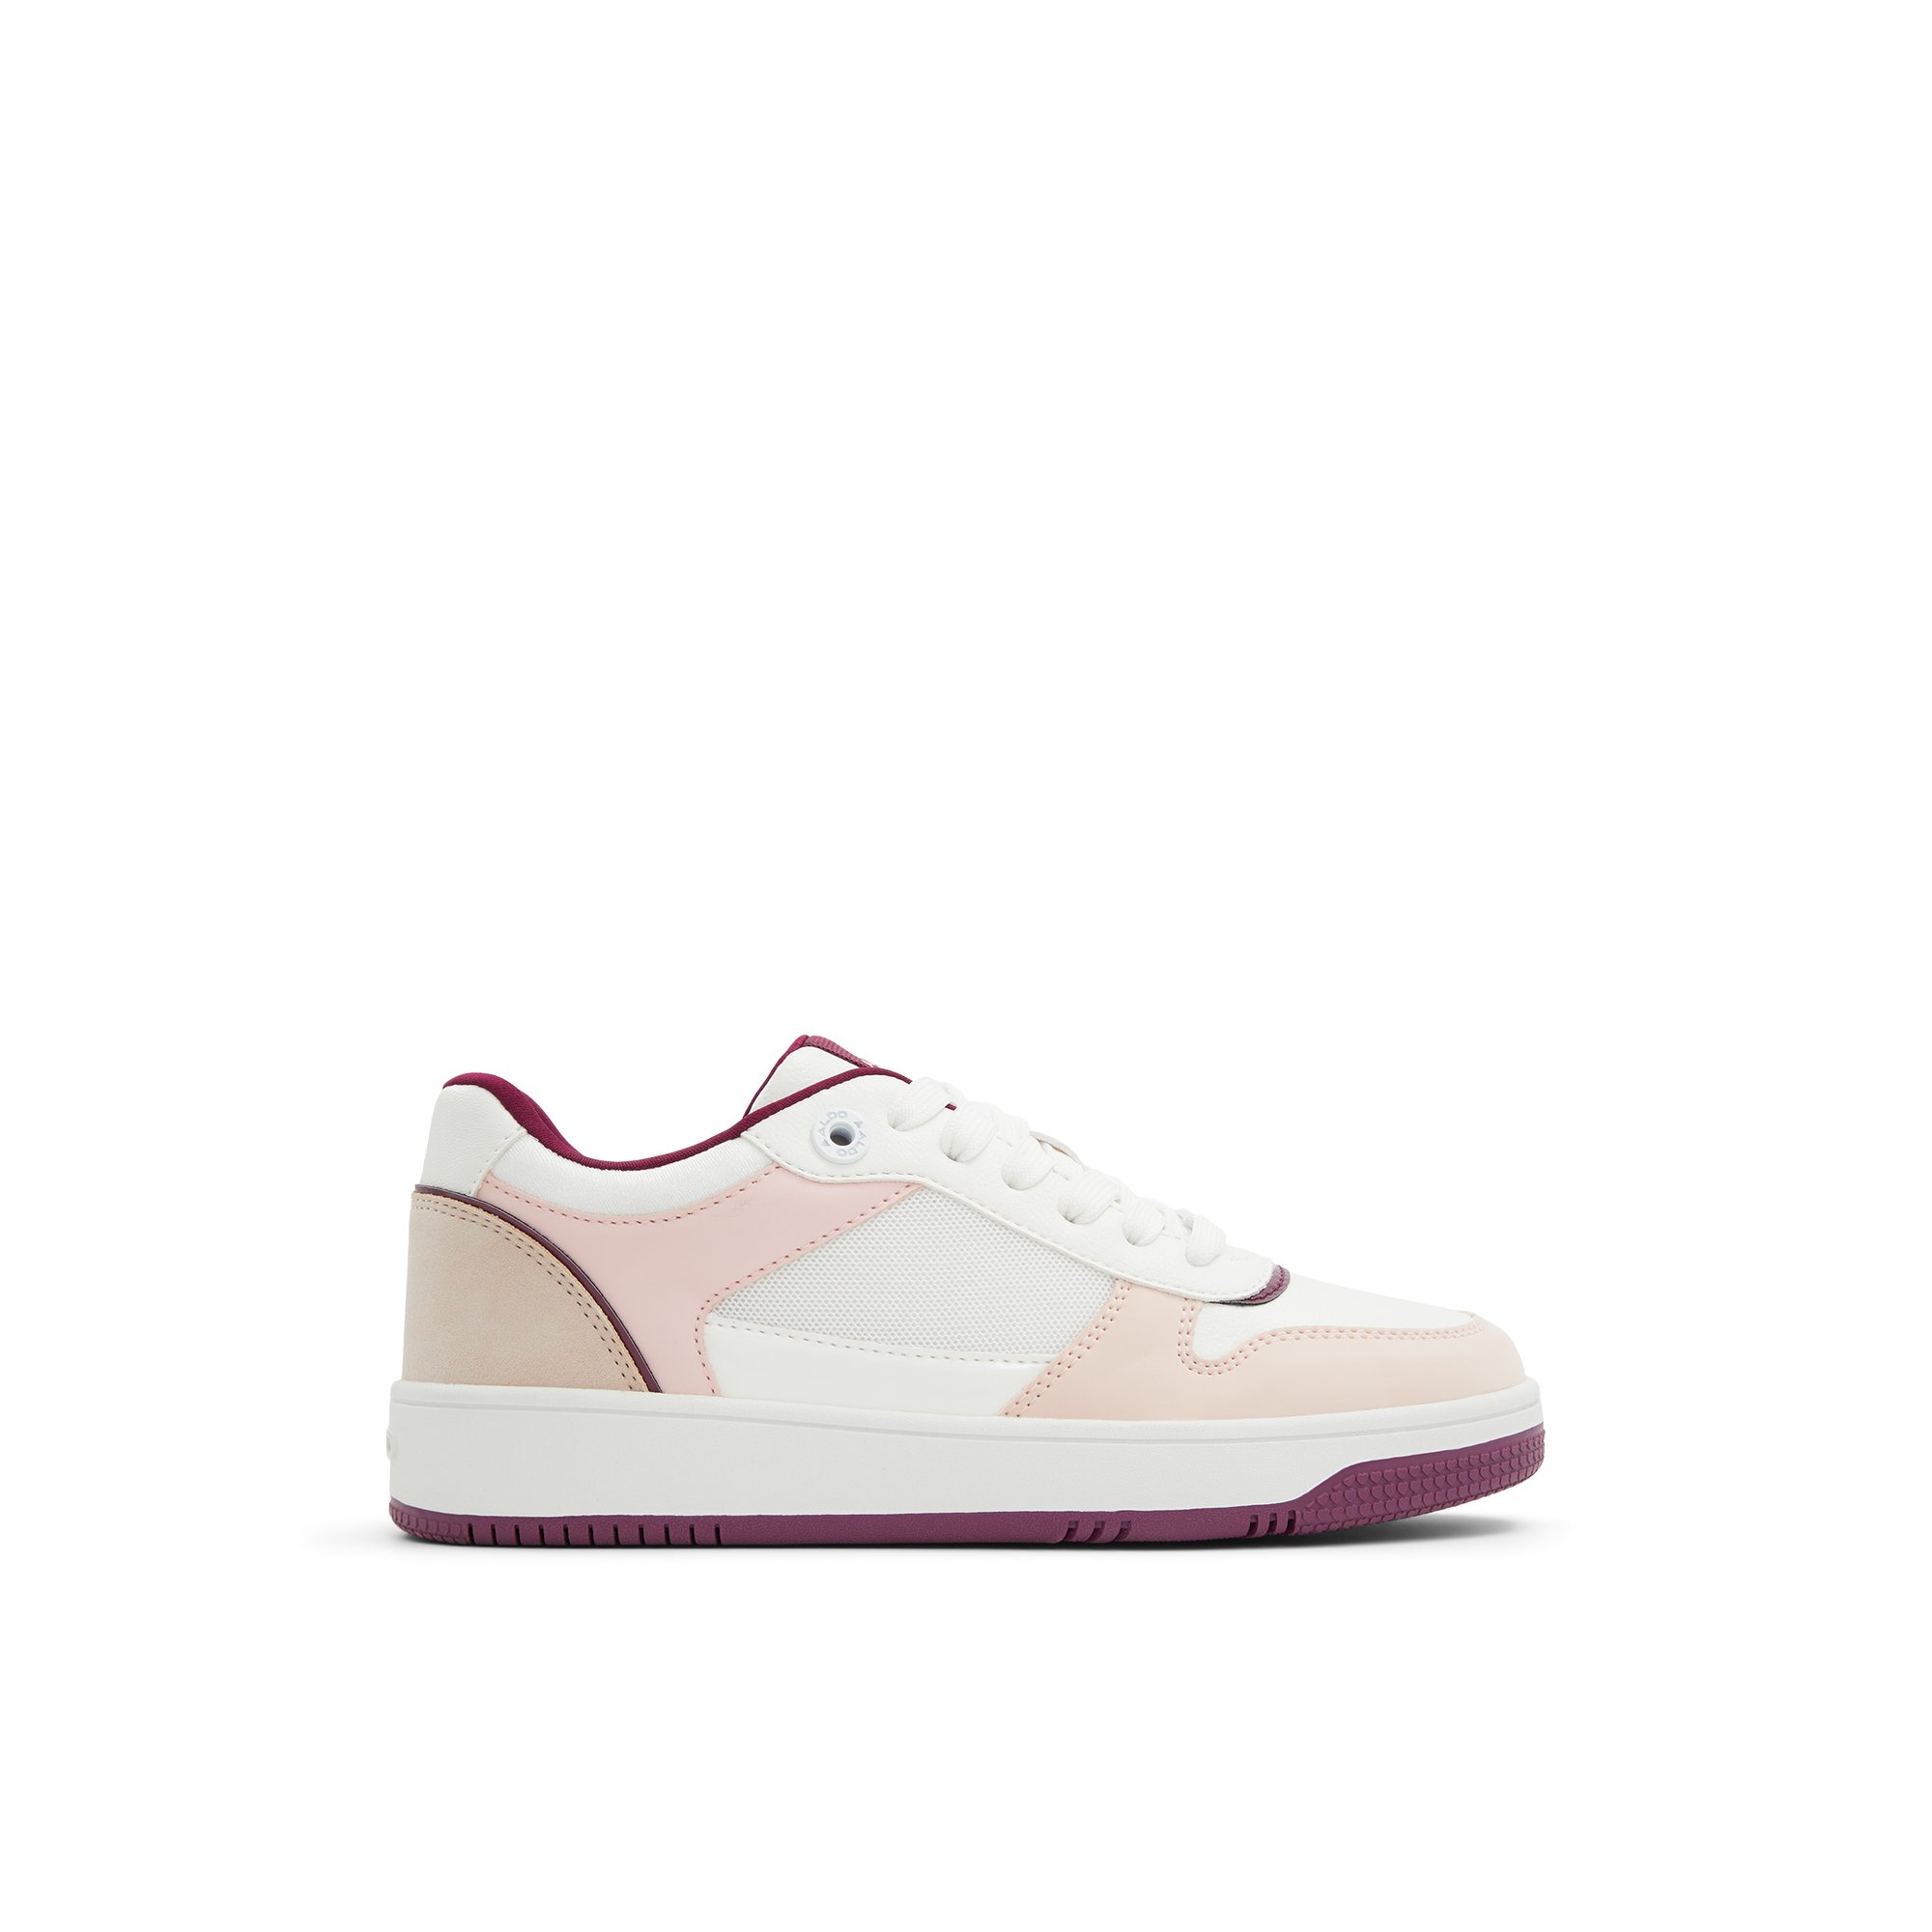 ALDO Retroact - Women's Sneakers Low Top - Pink